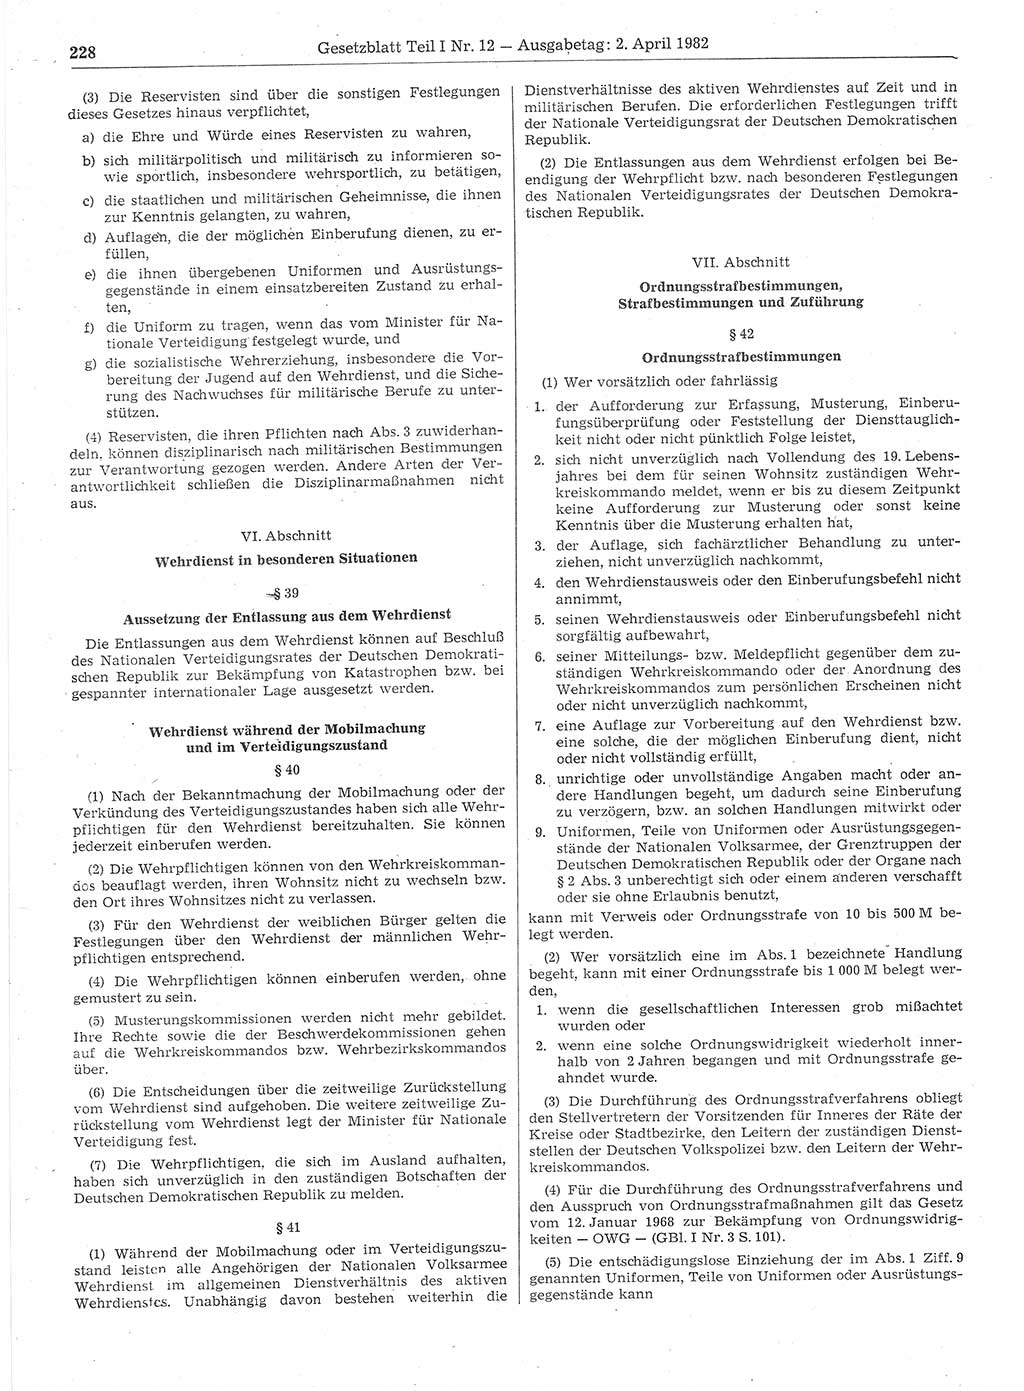 Gesetzblatt (GBl.) der Deutschen Demokratischen Republik (DDR) Teil Ⅰ 1982, Seite 228 (GBl. DDR Ⅰ 1982, S. 228)